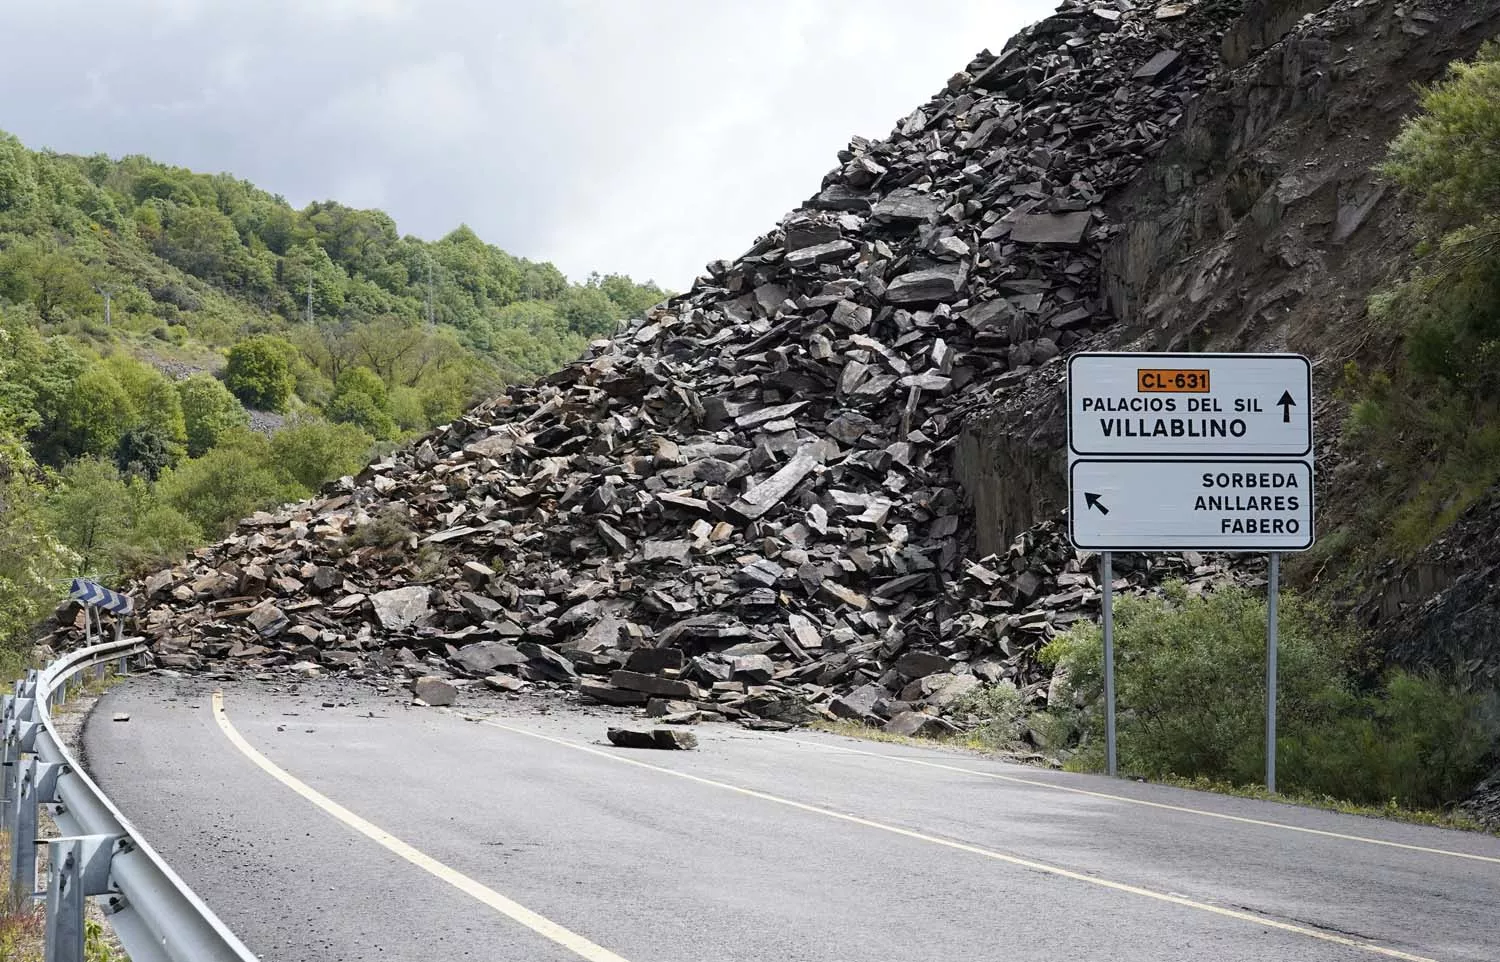 Desprendimiento de rocas y tierra en la carretera CL 631 en la localidad de Páramo del Sil 